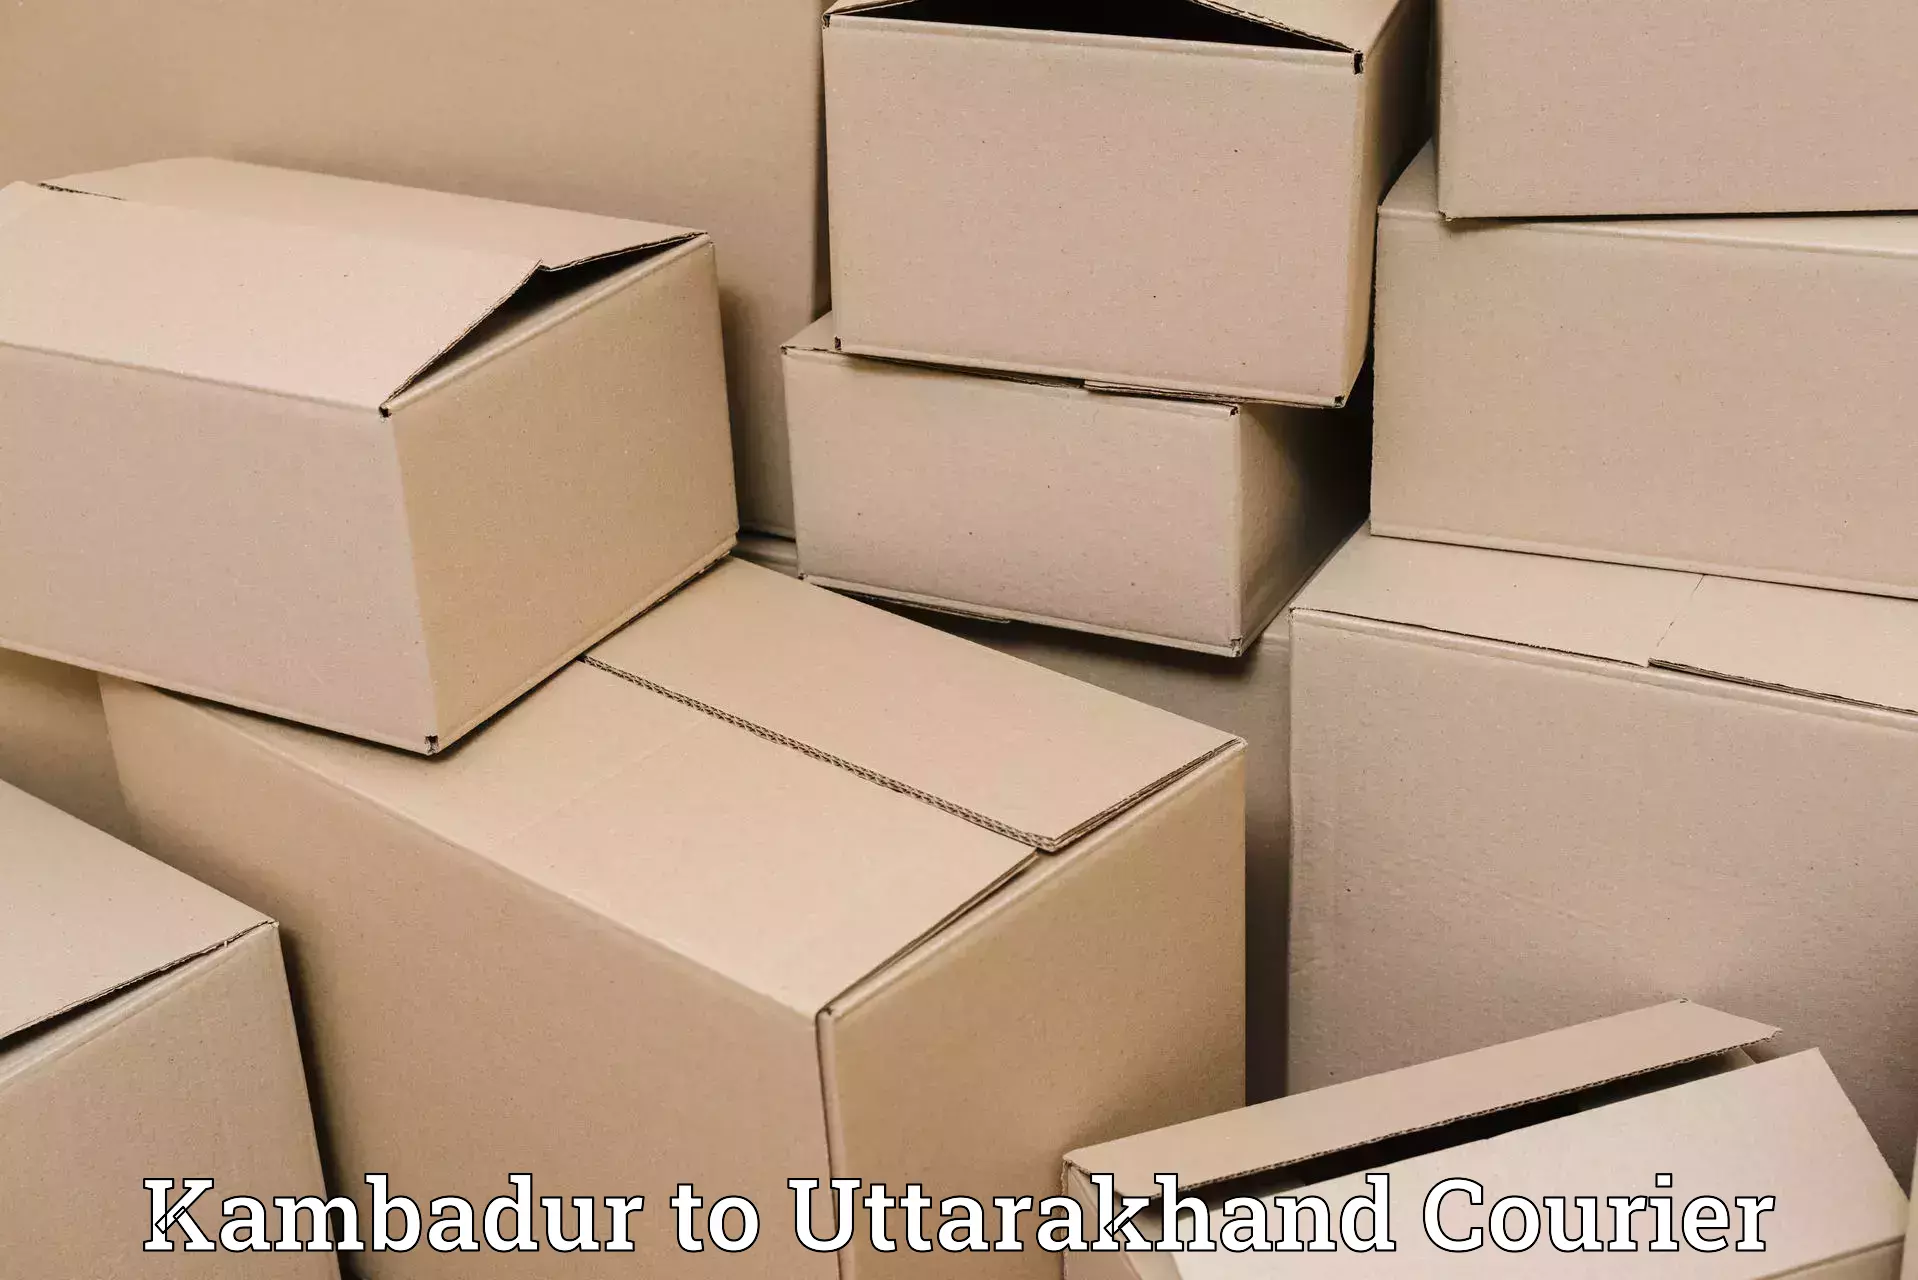 Cargo courier service Kambadur to Srinagar Pauri Garhwal